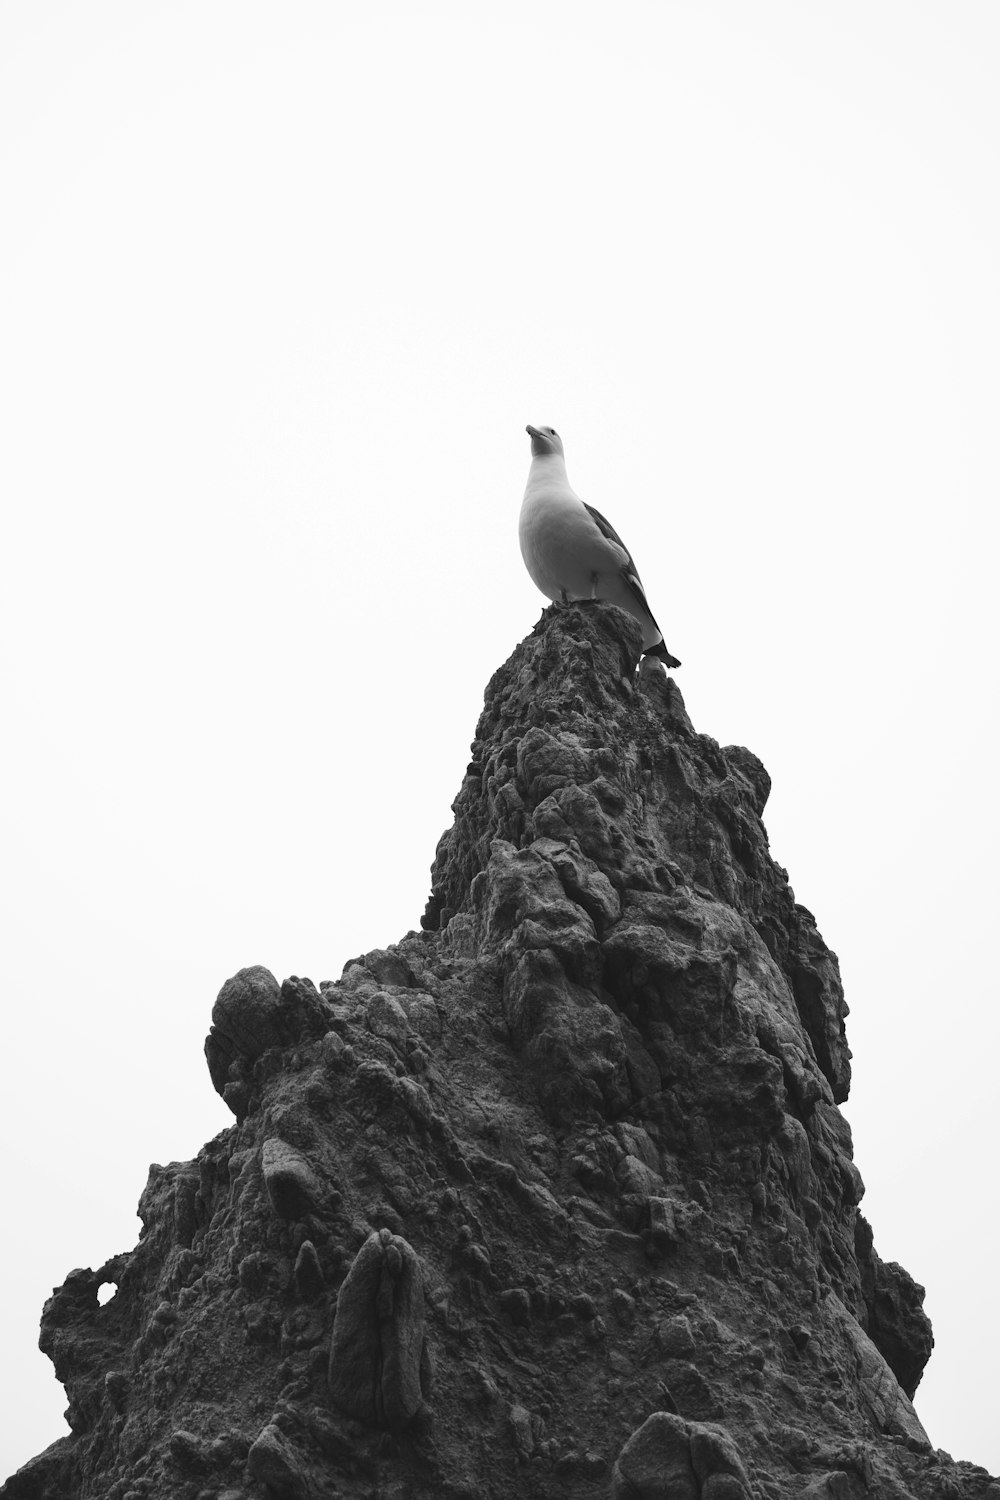 Una foto en blanco y negro de un pájaro en una roca